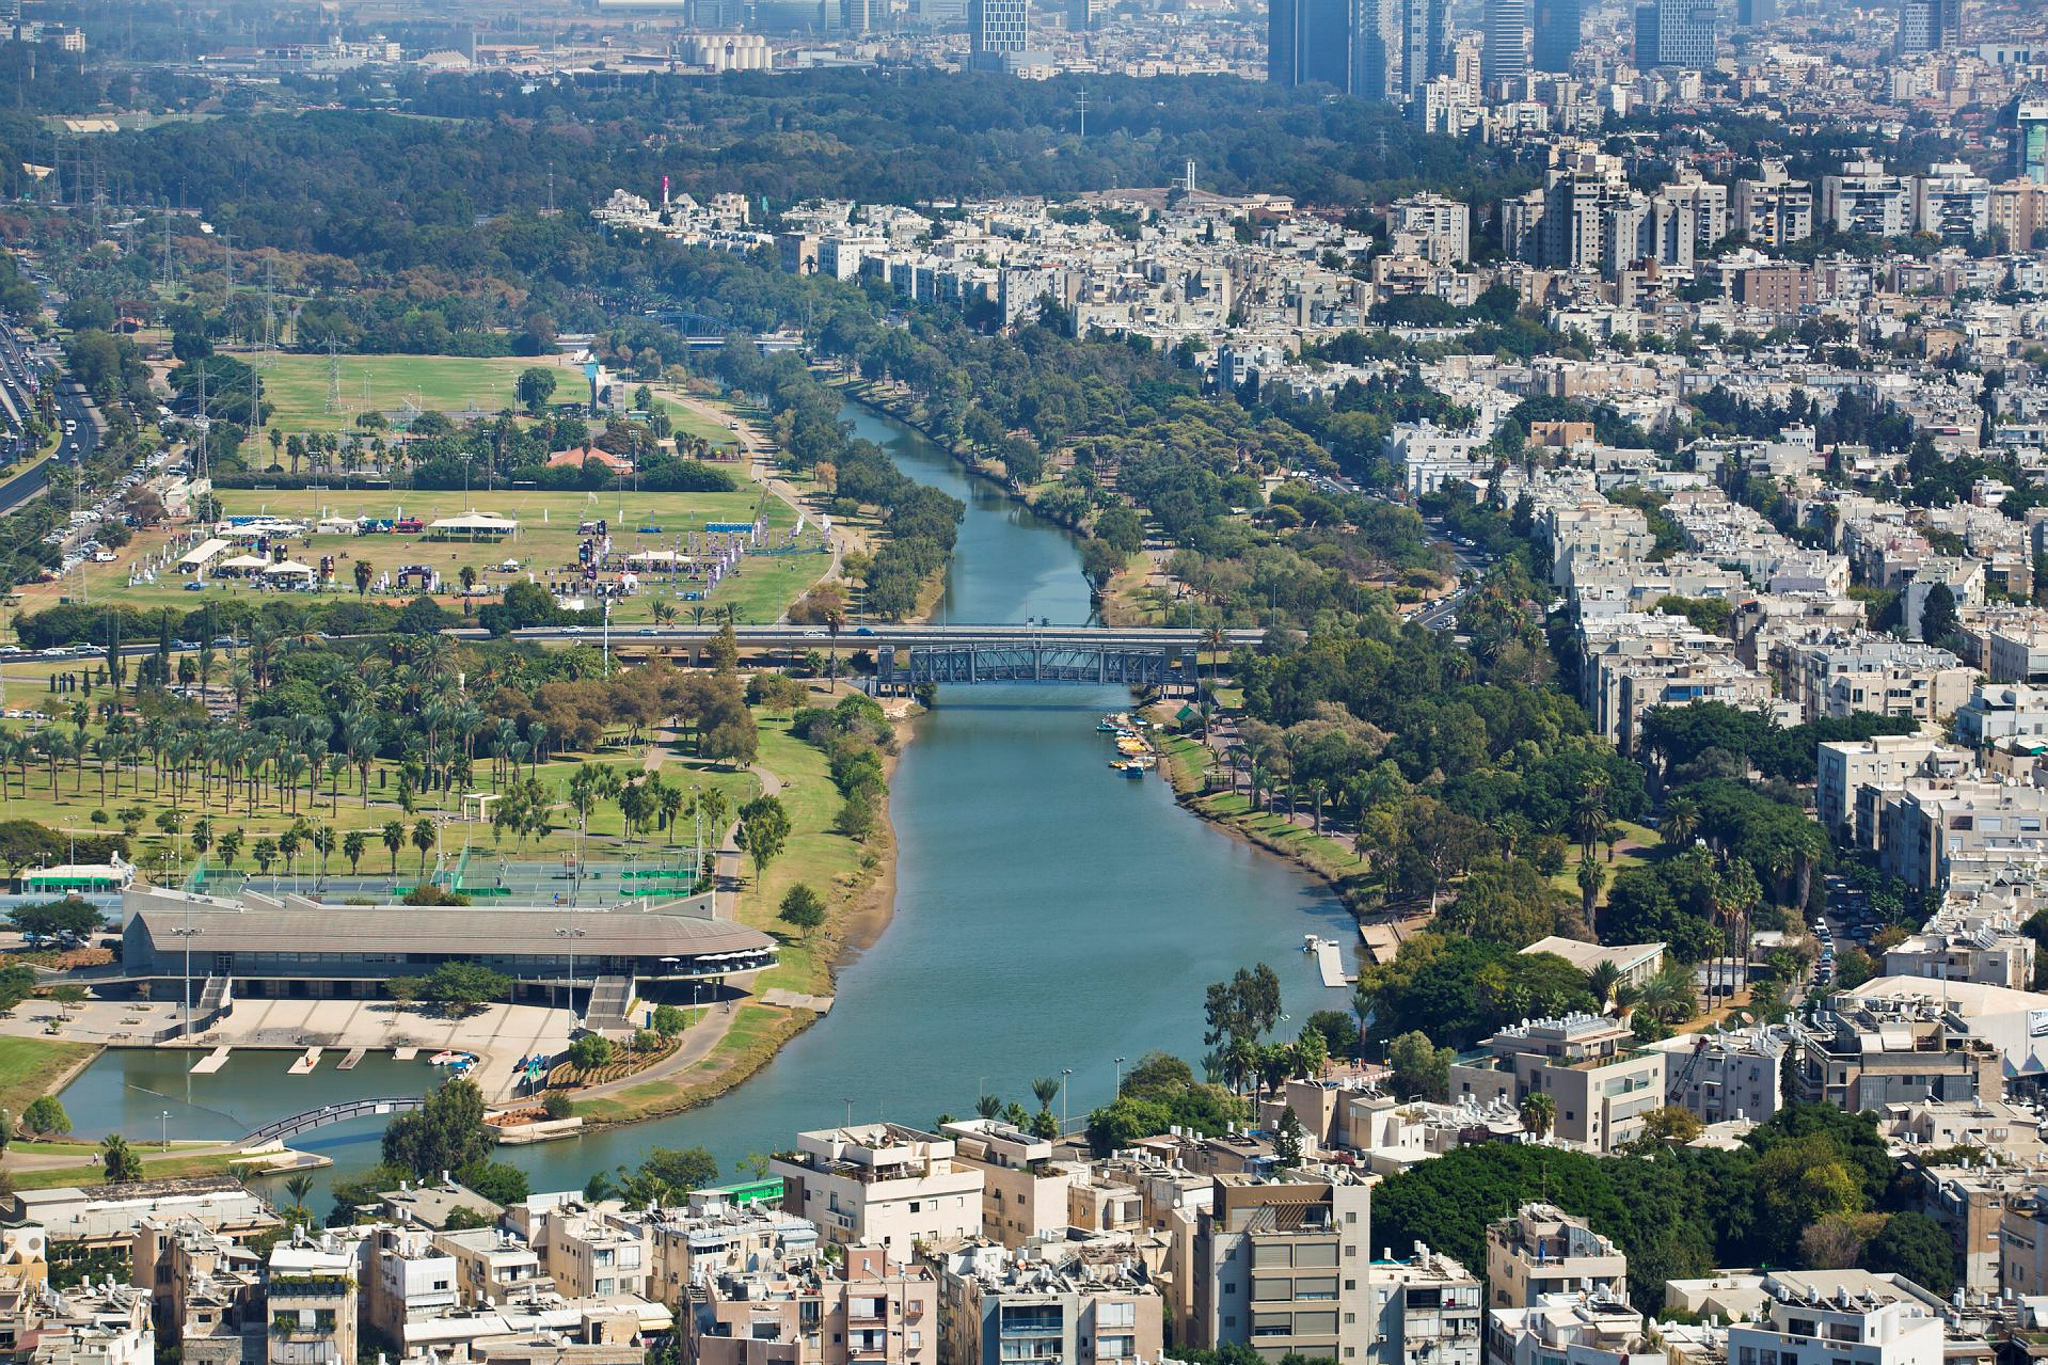 Yarkon-Park-in-Tel-Aviv.-Photo-by-Moshe-Shai-FLASH90.jpg